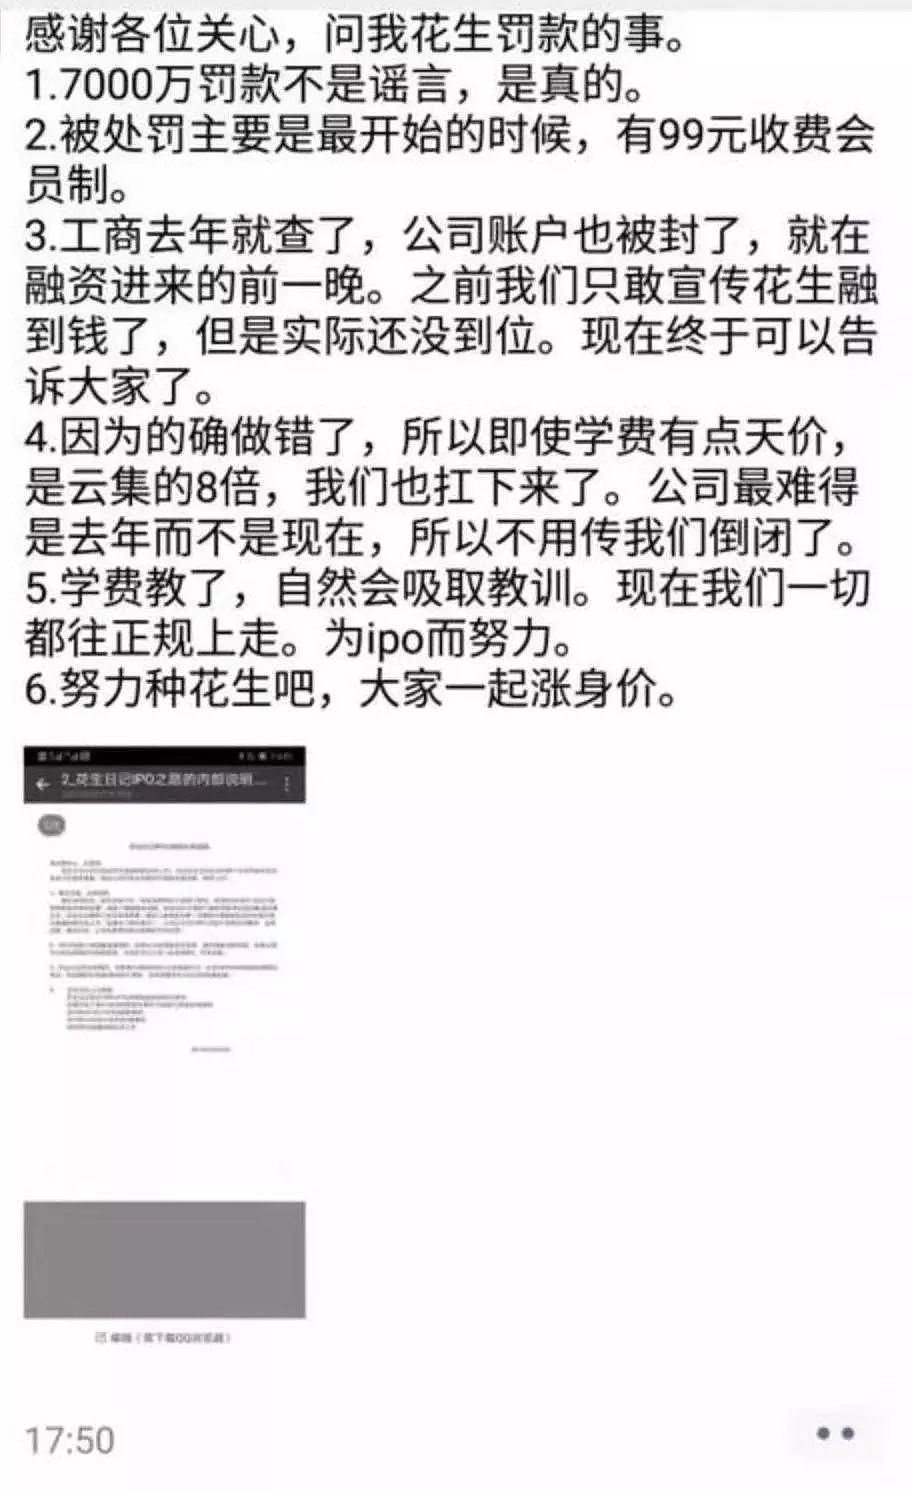 电商平台悄然「解禁」电子烟；中国银联回复 315 盗刷问题；新西兰总理质问 Facebook：为何枪手能直播 | 极客早知道 - 6